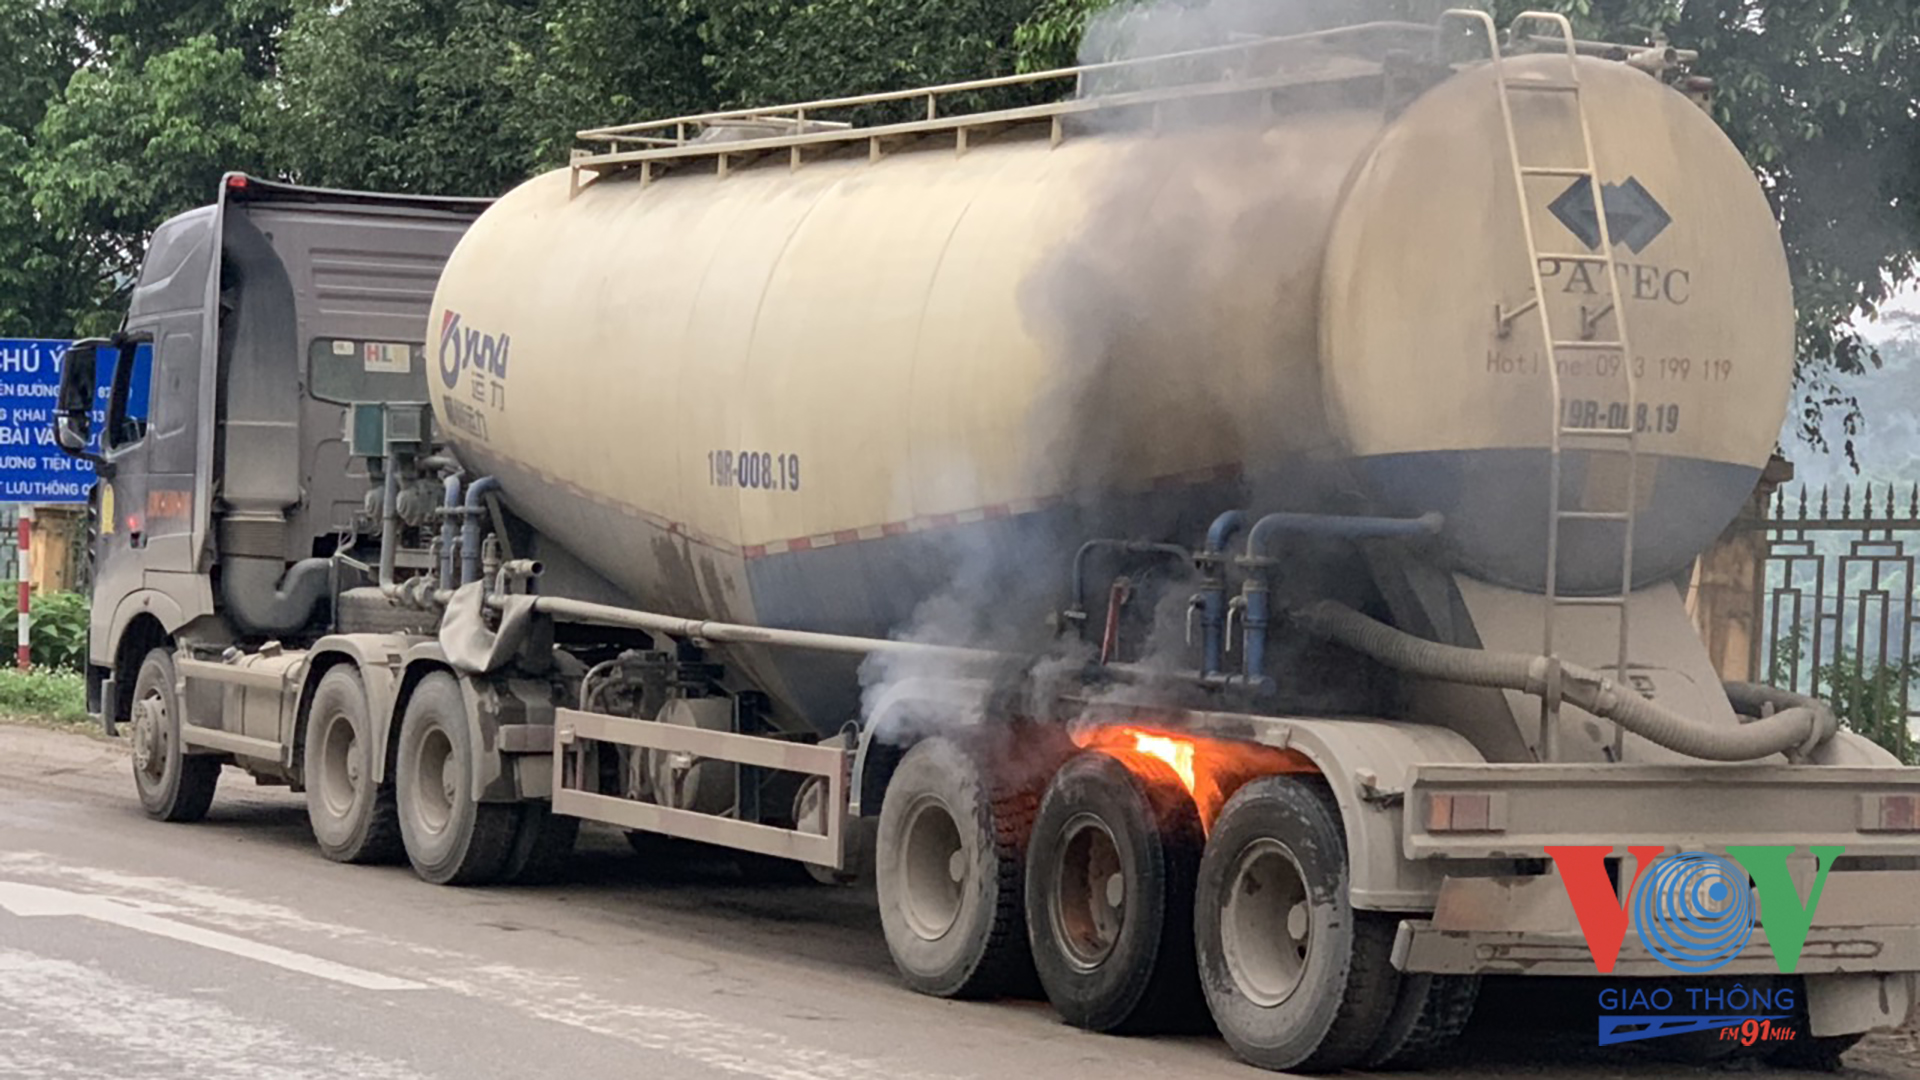 Chiếc xe bồn chở hóa chất đang bốc cháy khi lưu thông